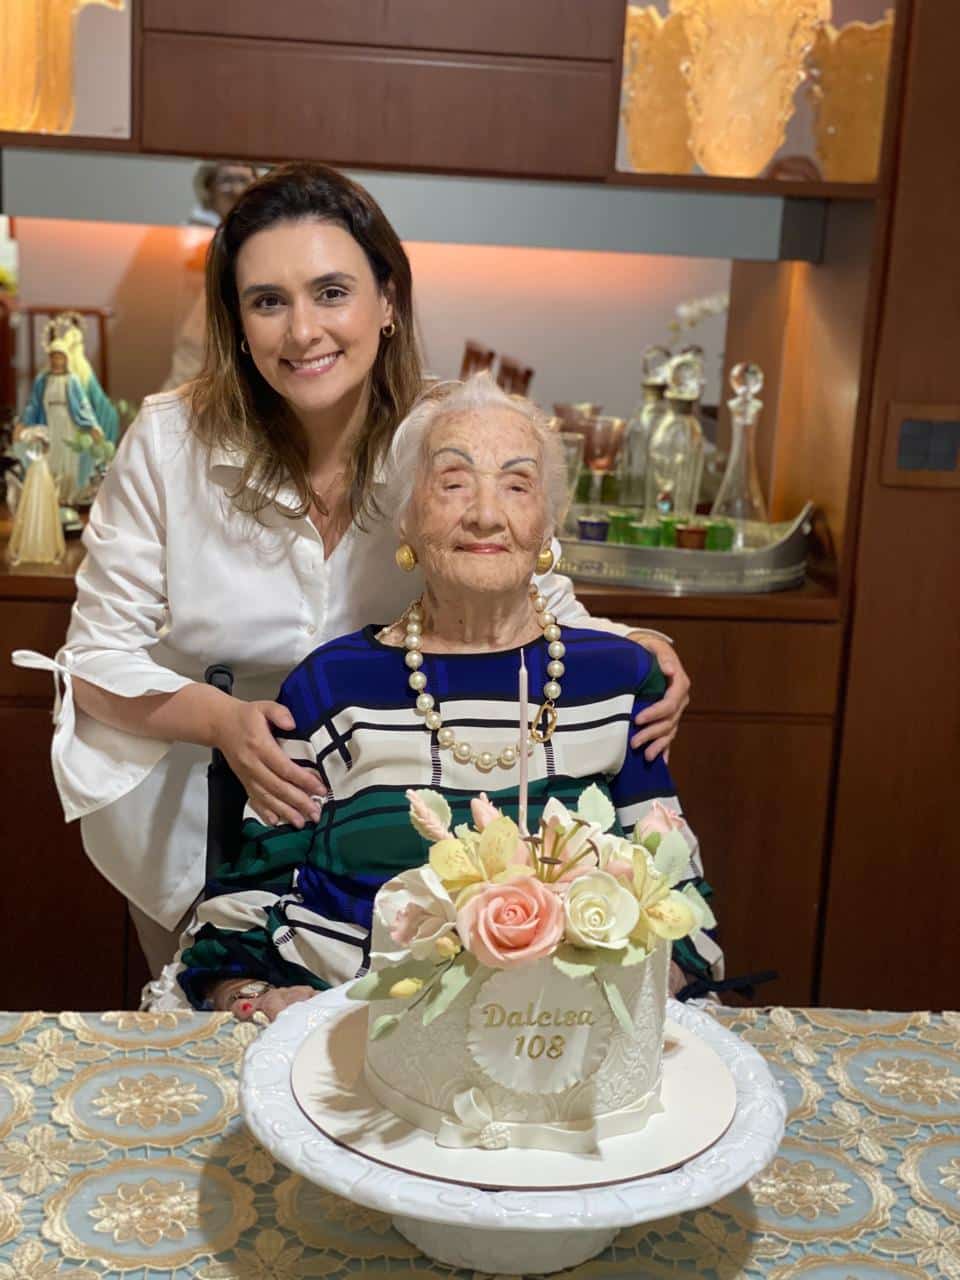 Festa em família: professora tradicional do ES faz 108 anos. Veja fotos! (Foto: Arquivo pessoal)